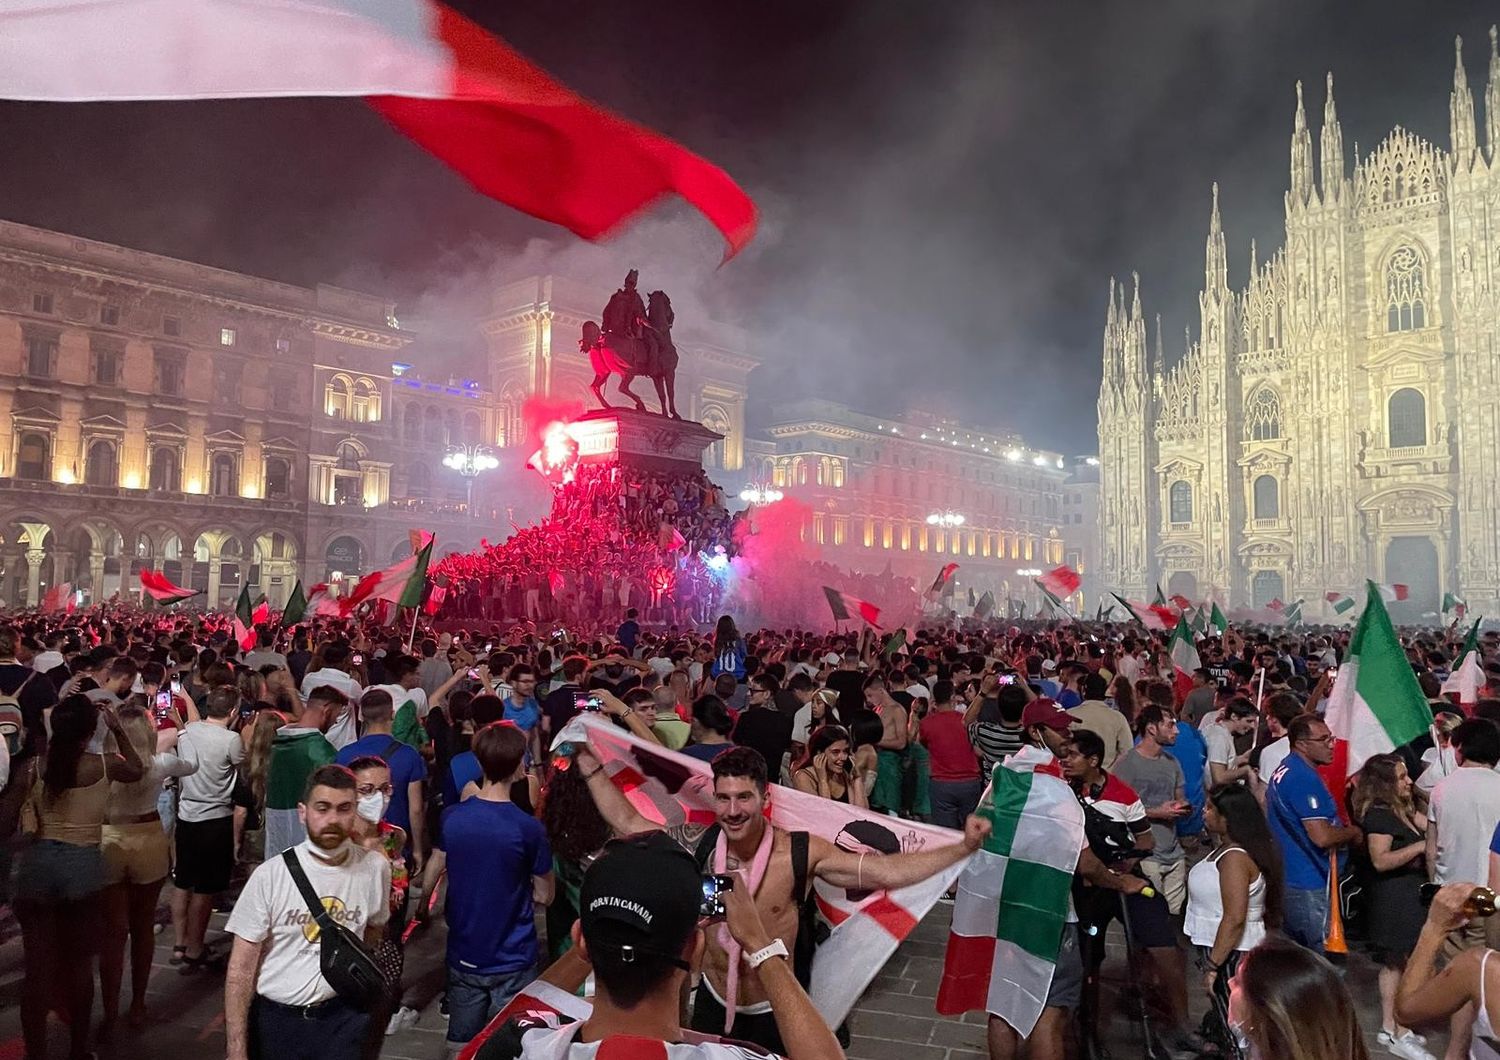 festeggiamenti piazze italia euro 2020